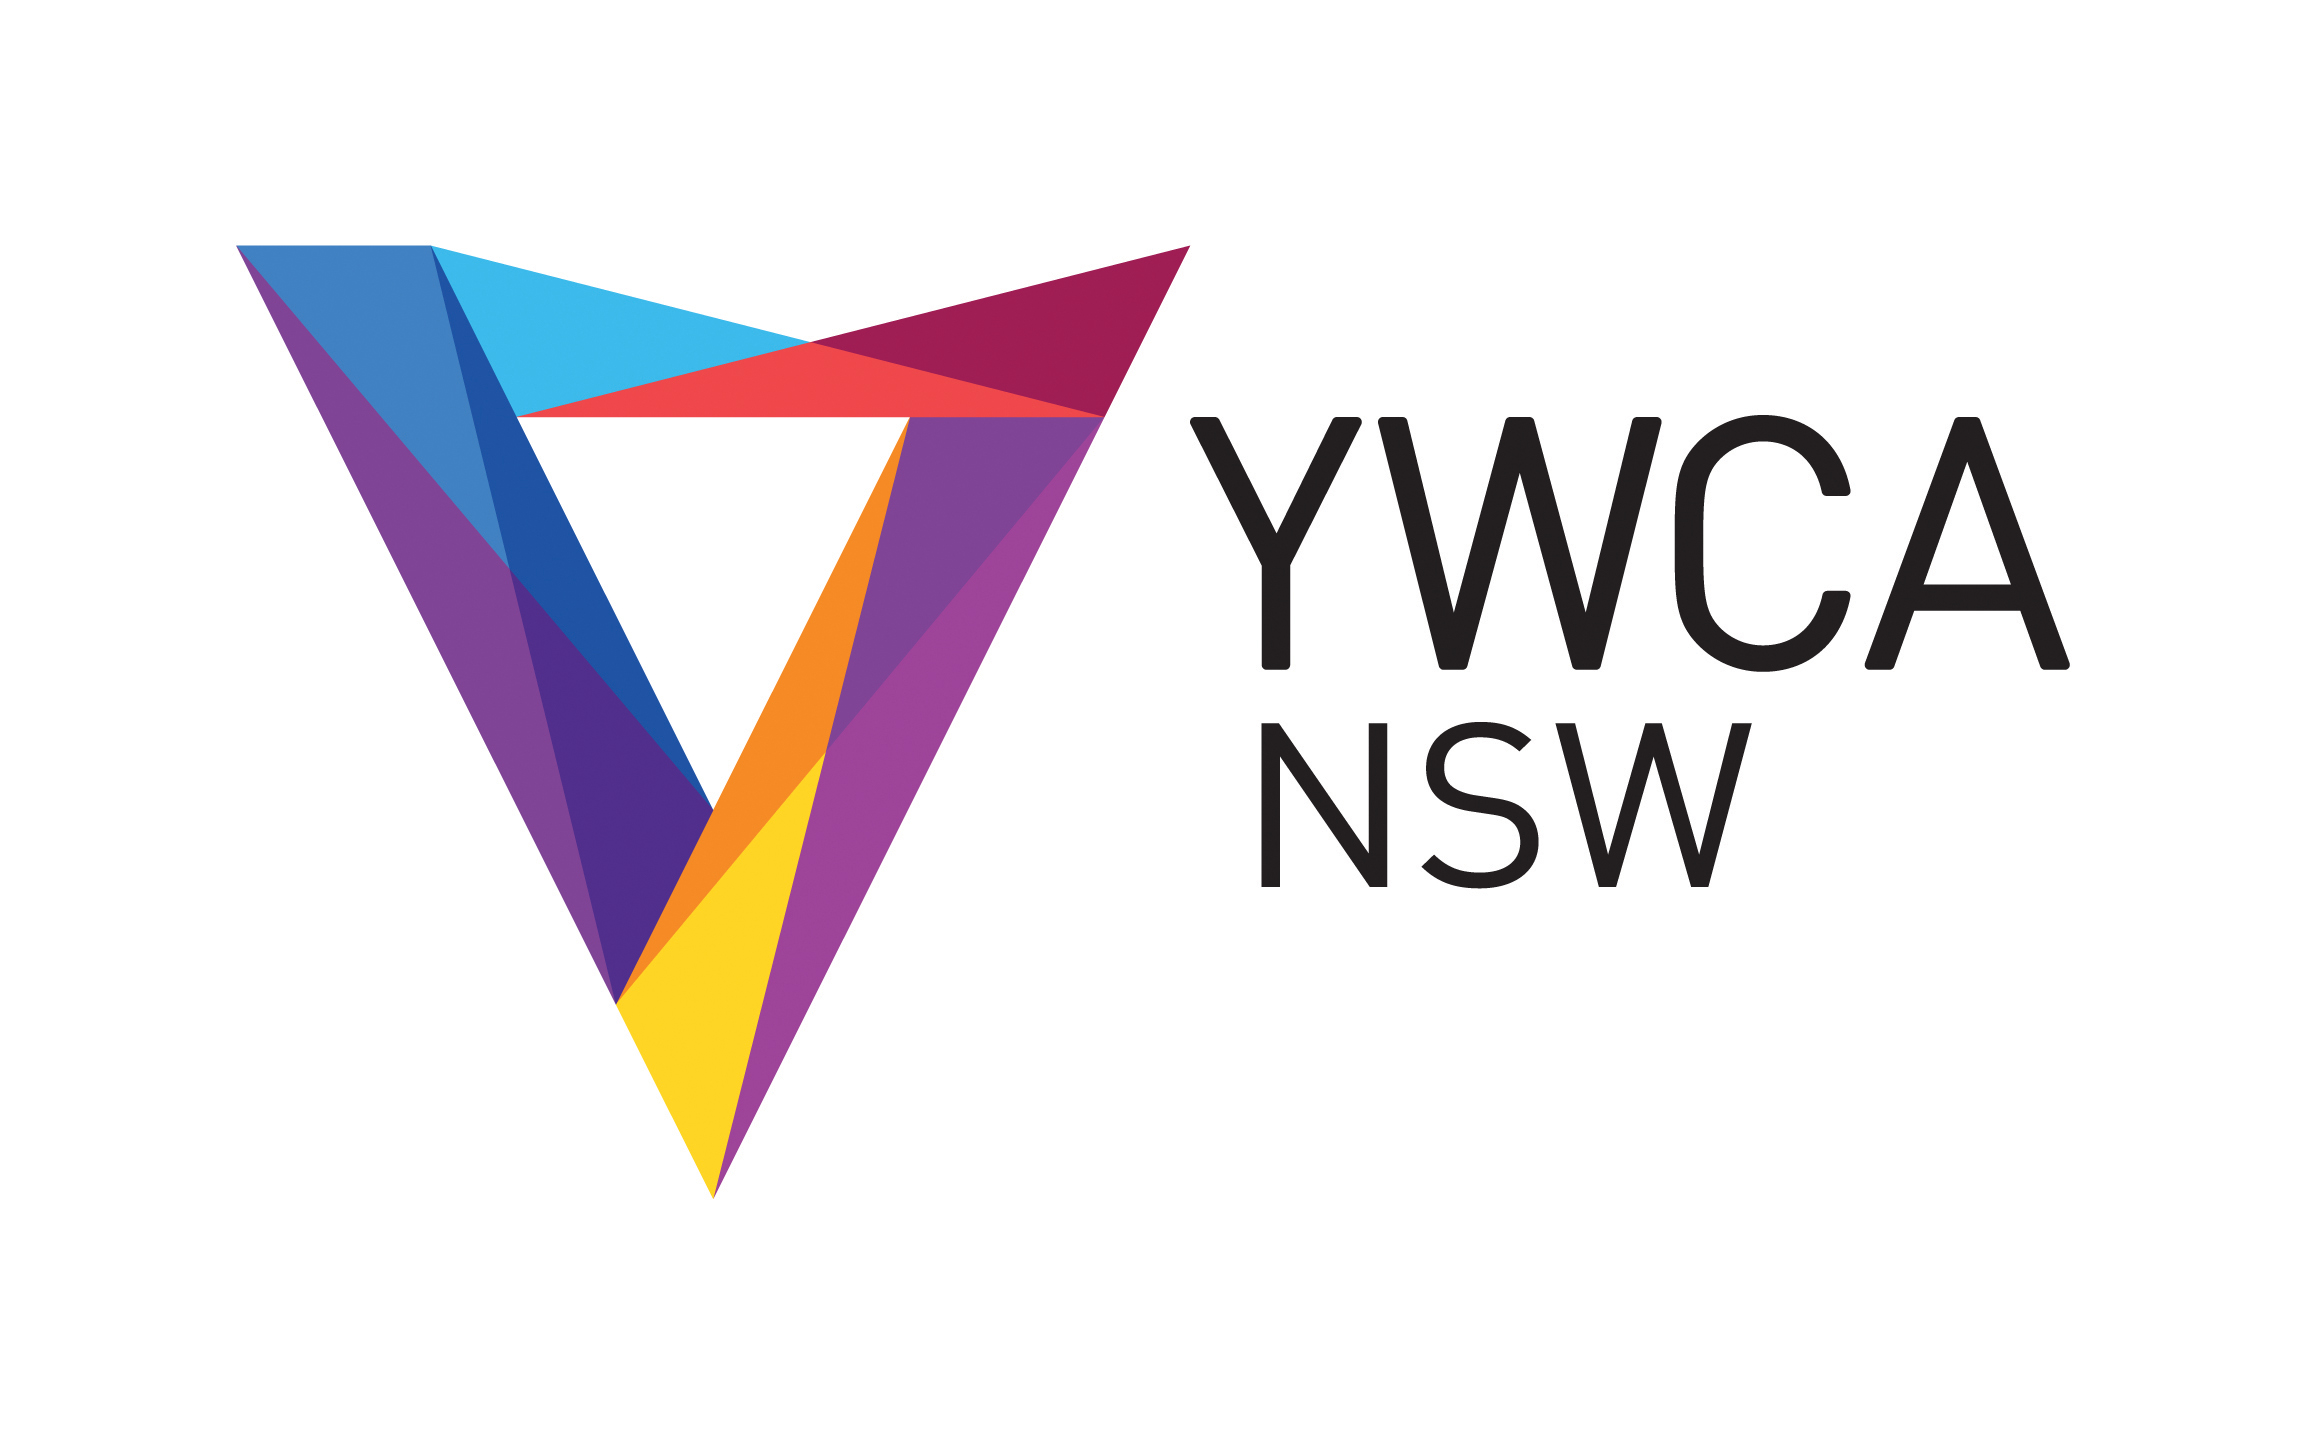 YWCA NSW logo